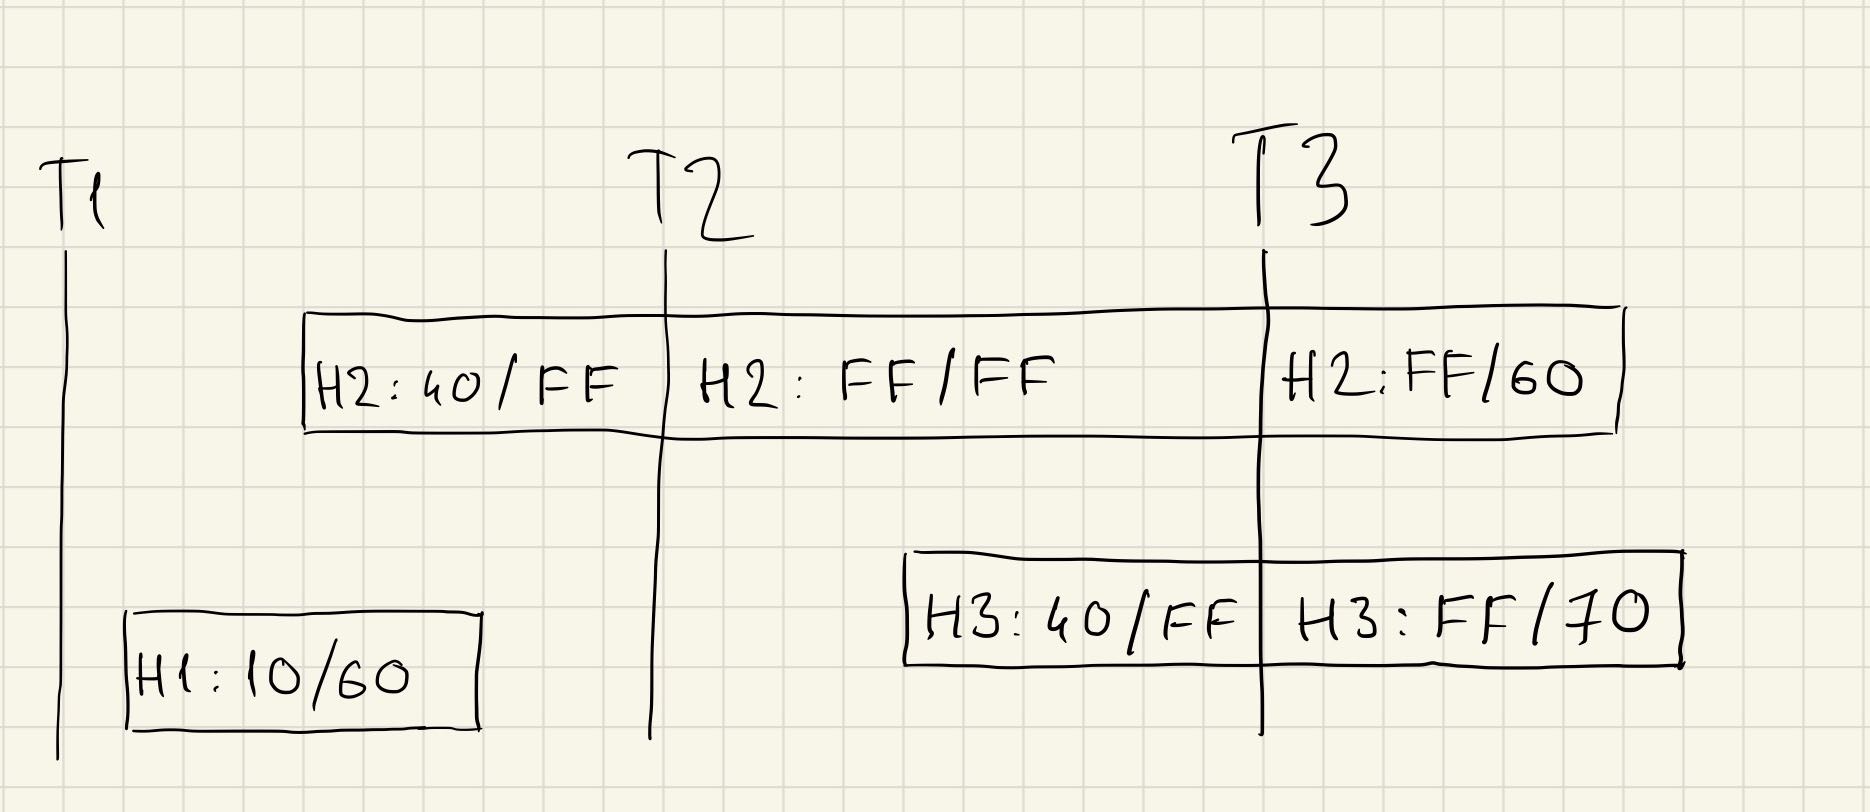 Реверс-инжиниринг бинарного формата на примере файлов Korg SNG. Часть 2 - 15